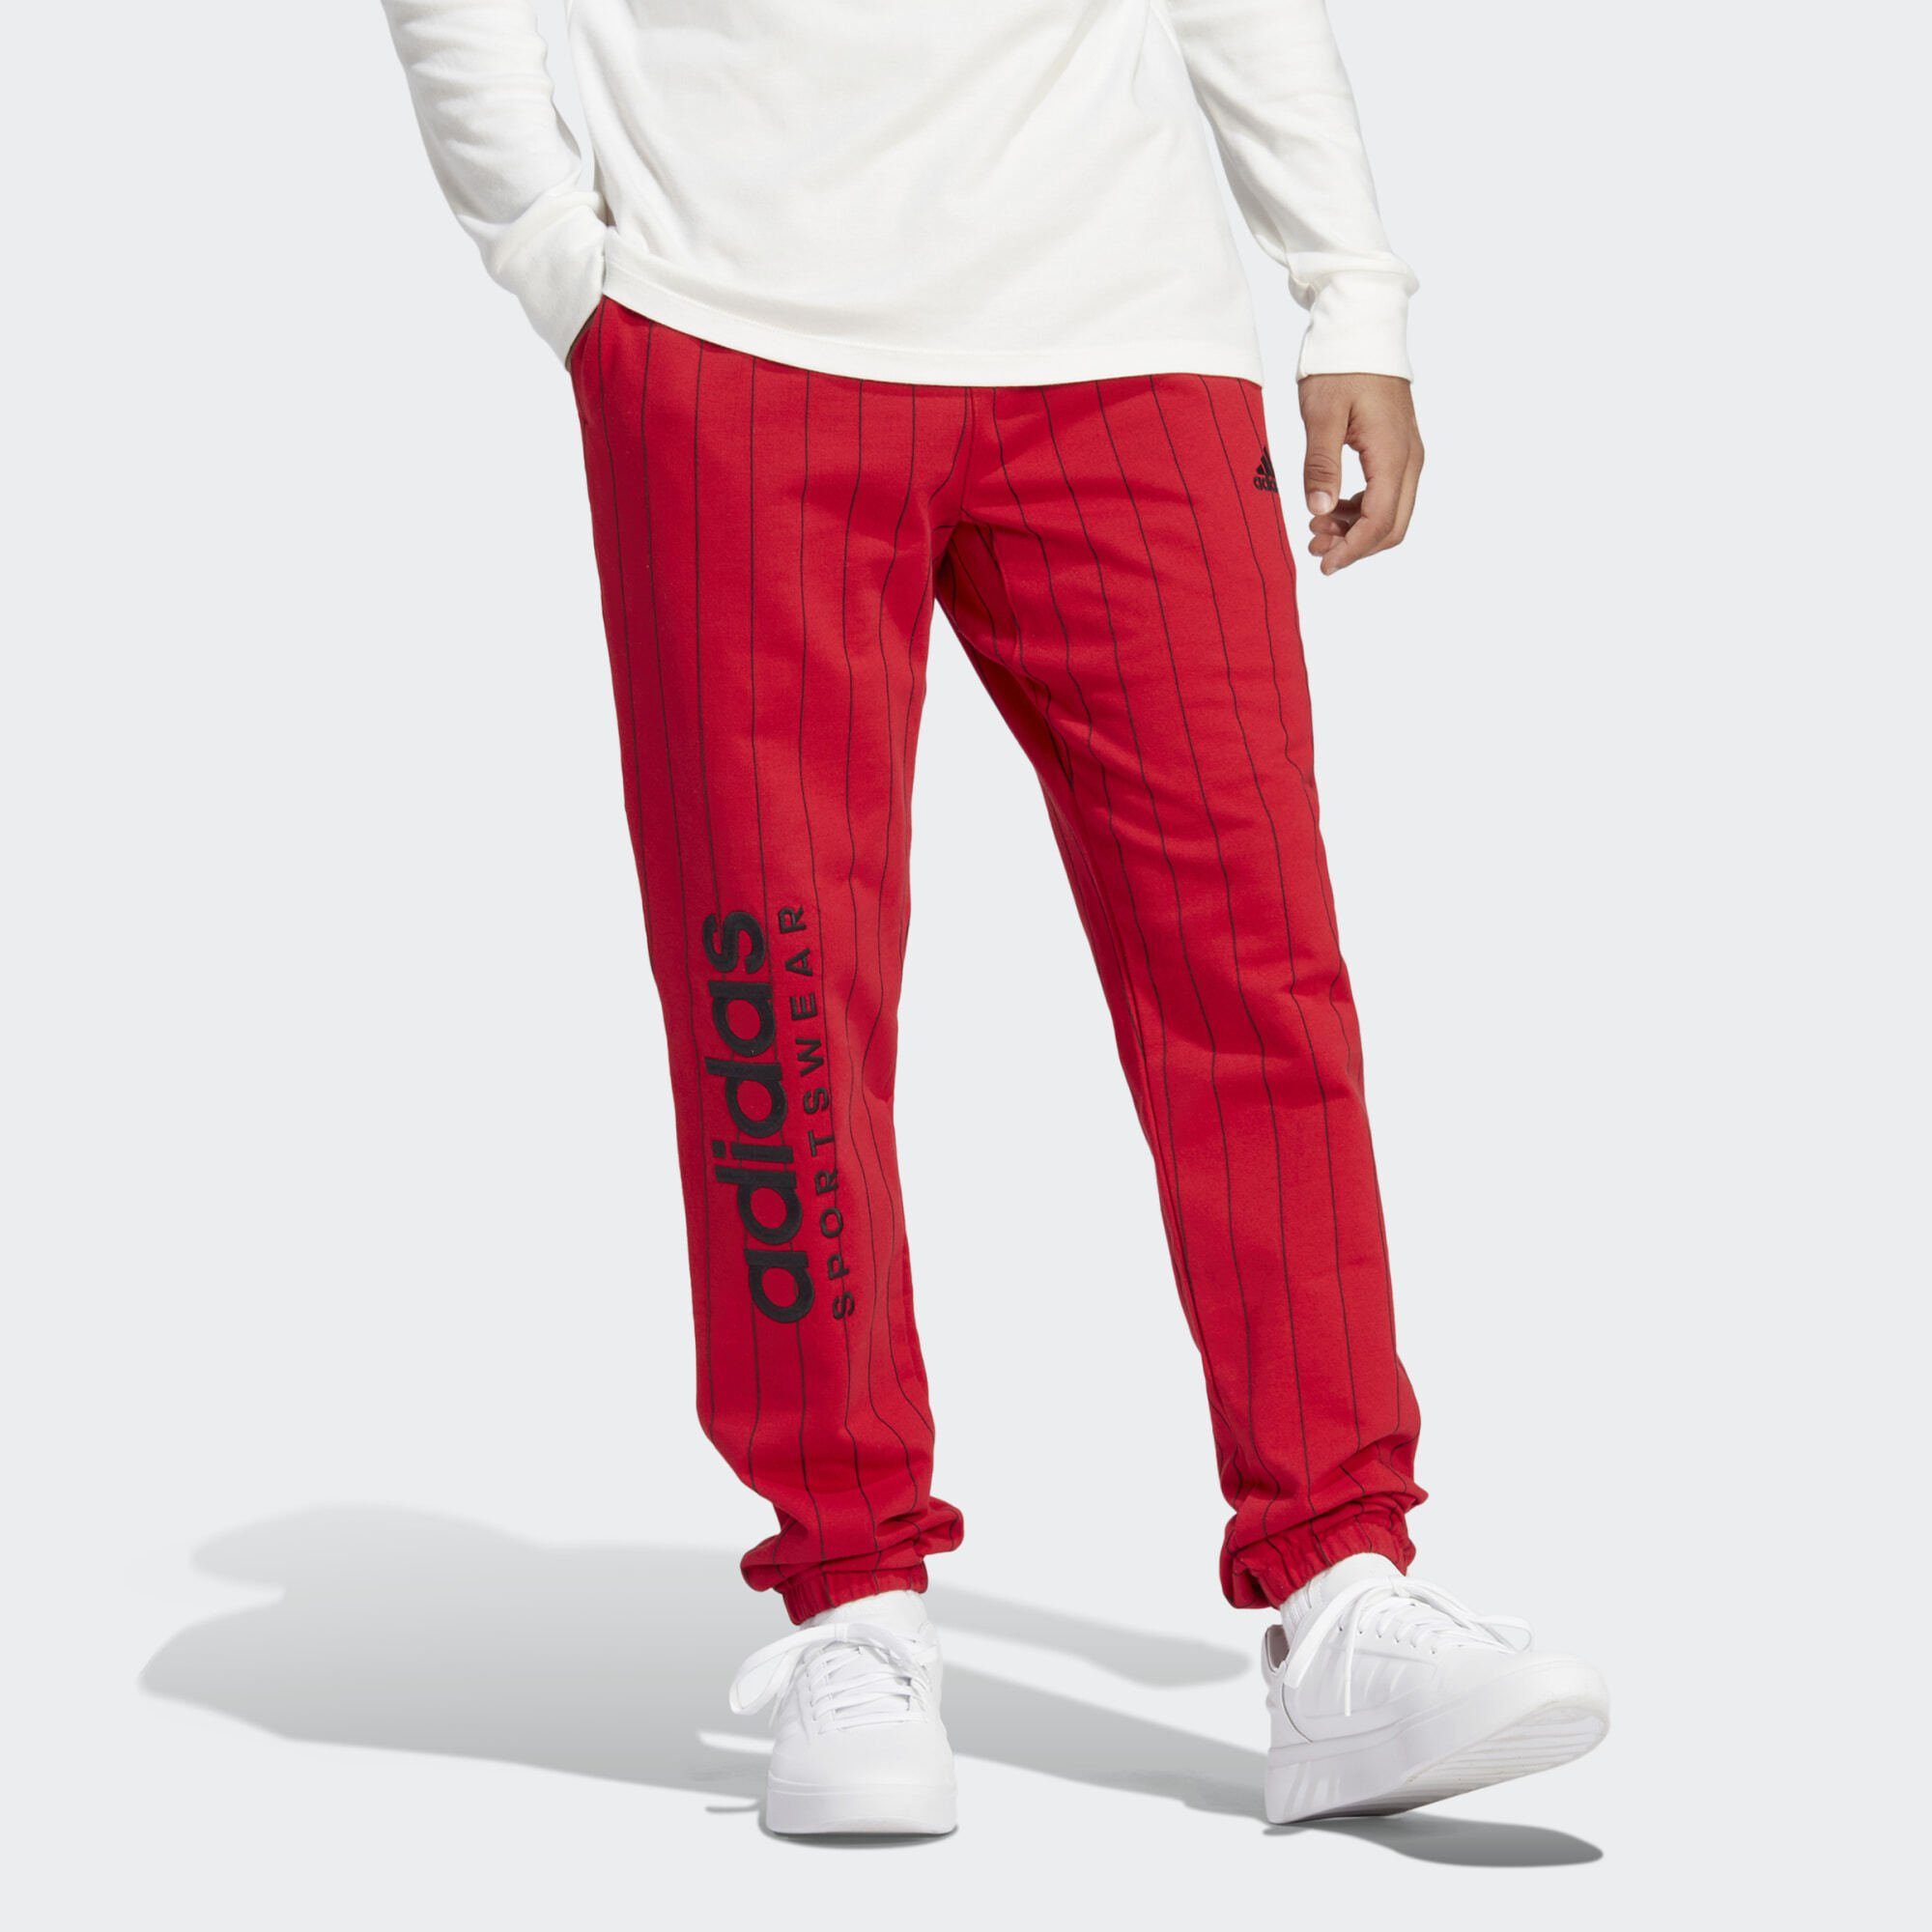 PINSTRIPE Jogginghose adidas FLEECE Better Scarlet Sportswear HOSE